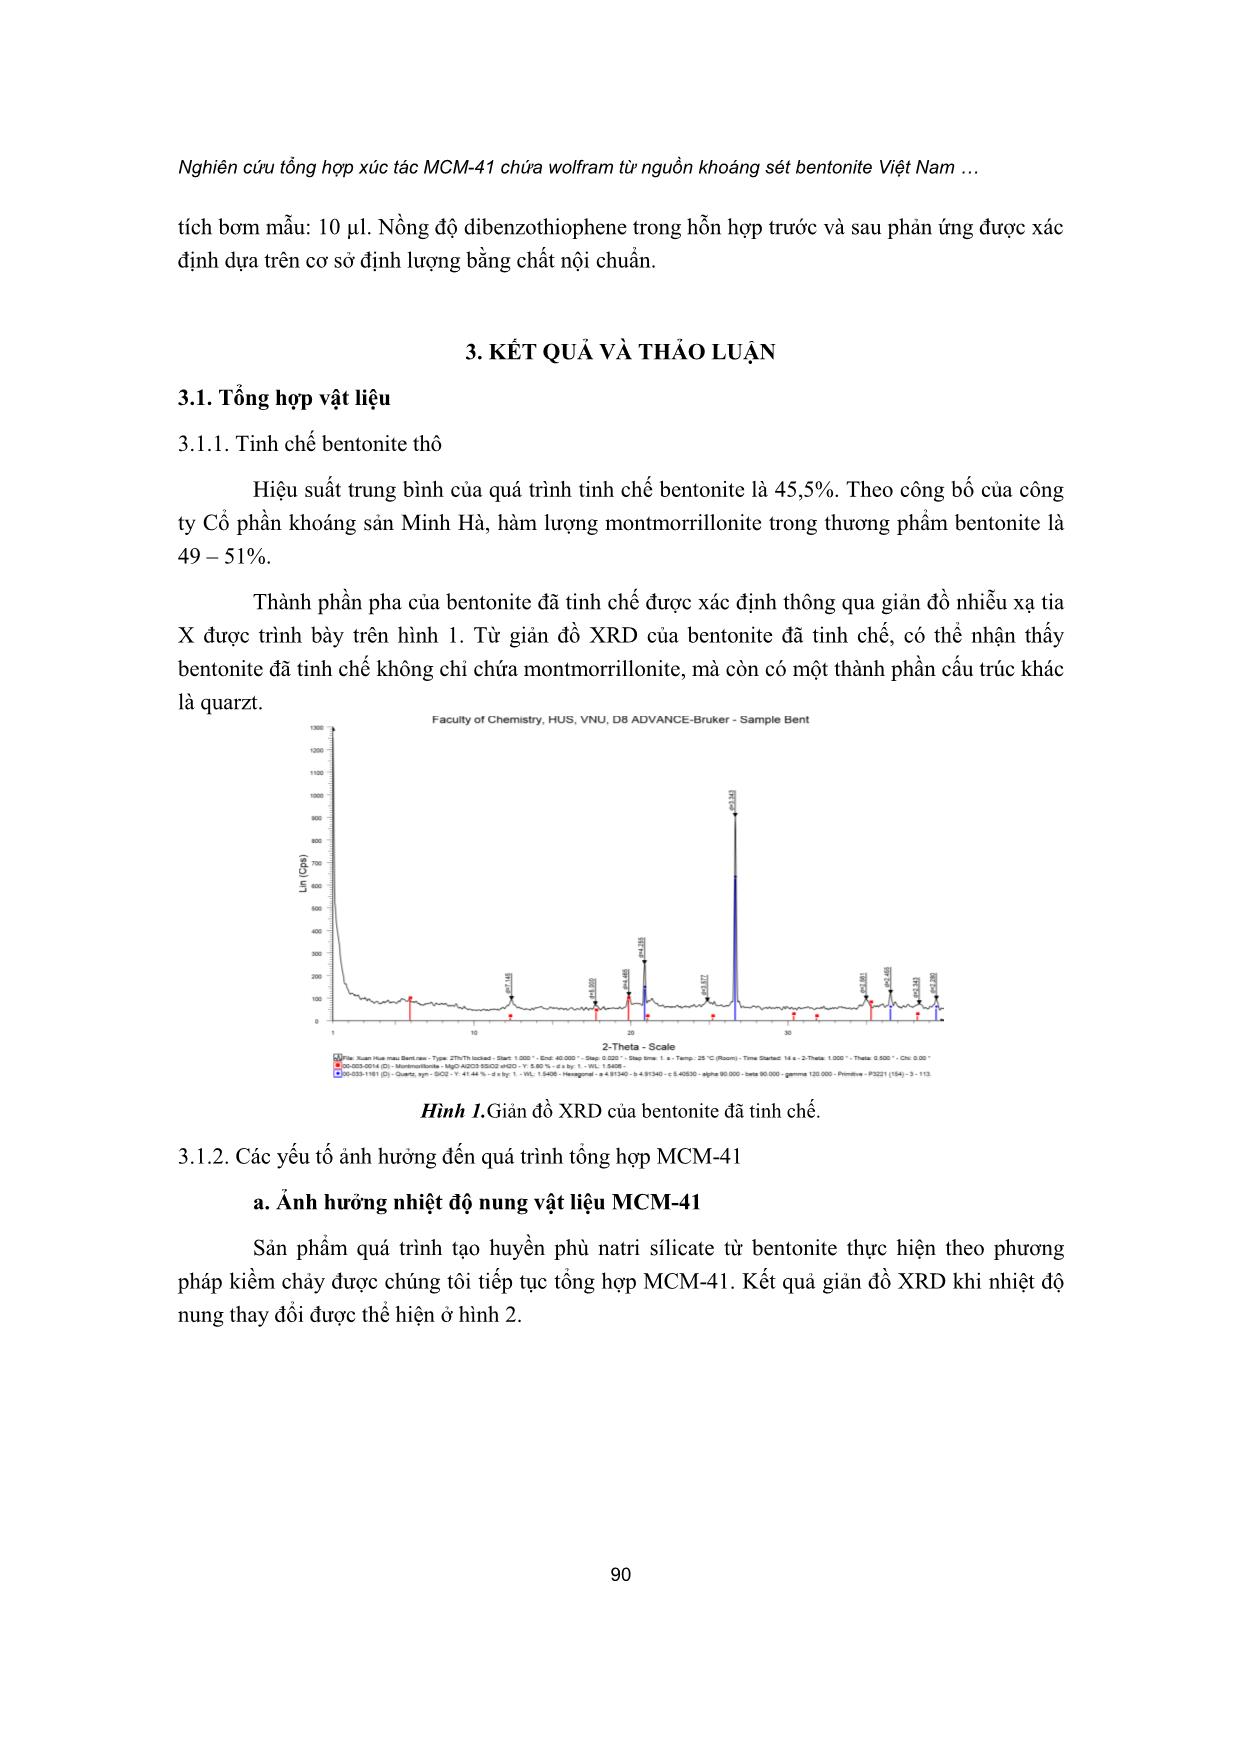 Nghiên cứu tổng hợp xúc tác MCM-41 chứa wolfram từ nguồn khoáng sét bentonite Việt Nam cho phản ứng desulfur hóa nhiên liệu trang 4